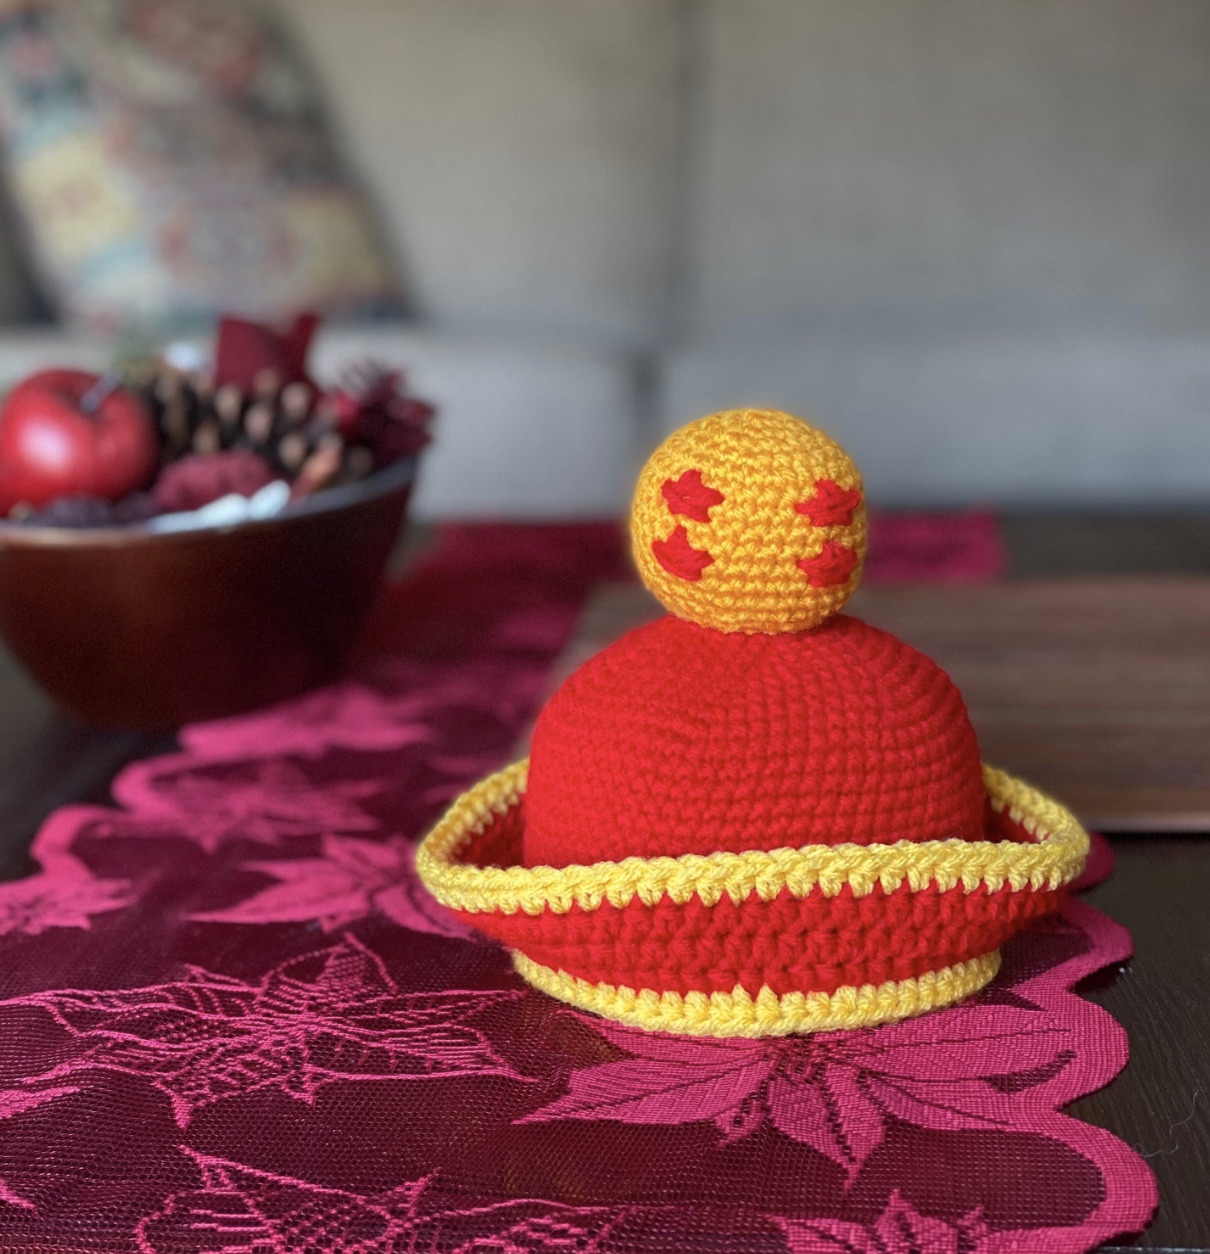 Dragonball Z Inspired Kid Gohan Crochet Baby Hat